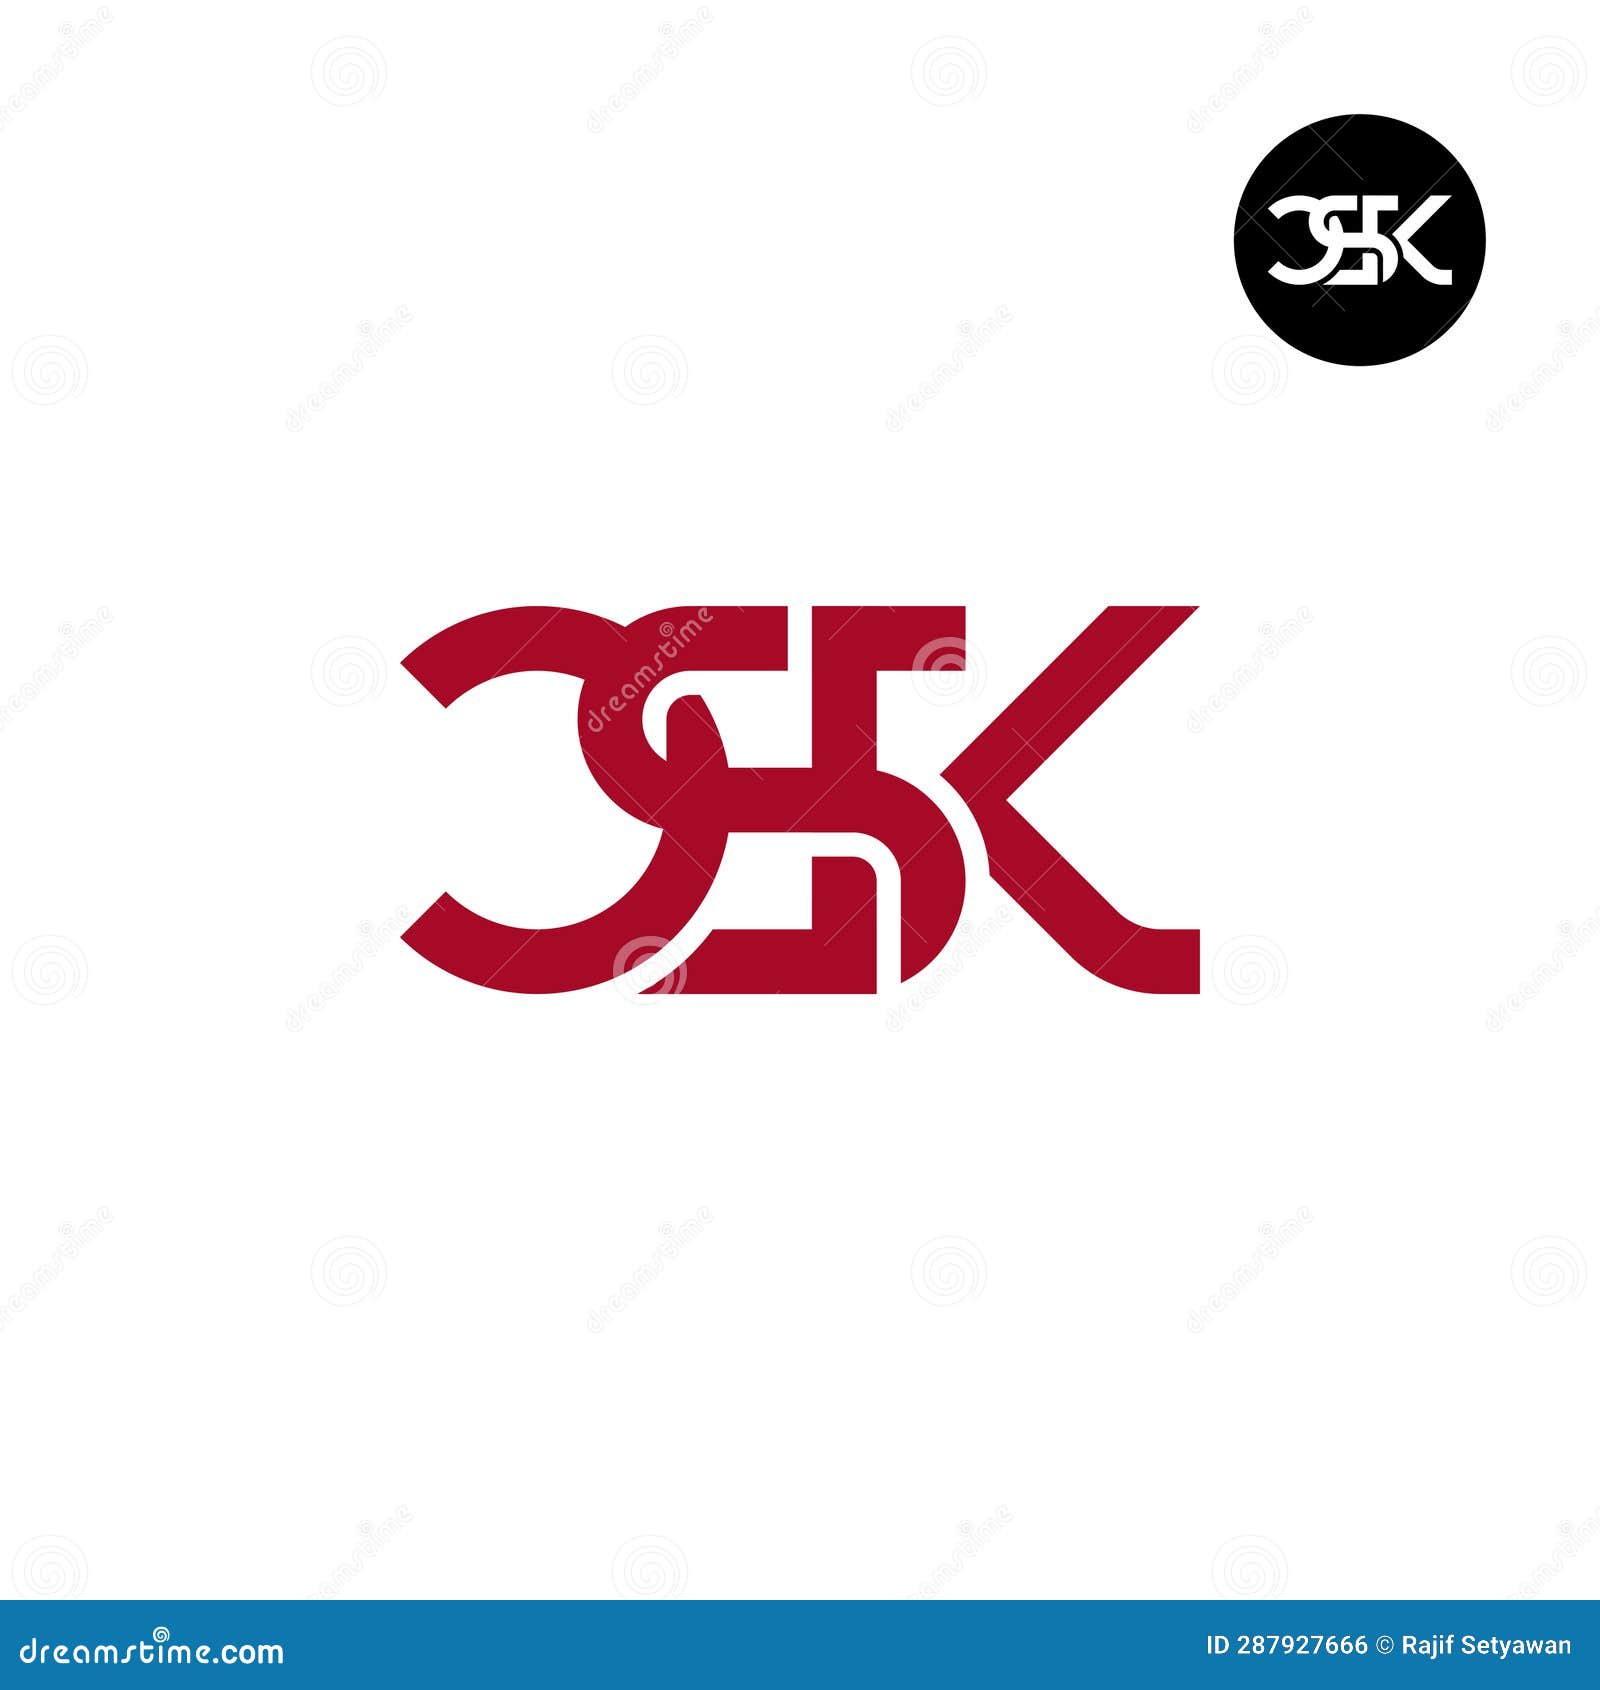 ArtStation - CSK logo art